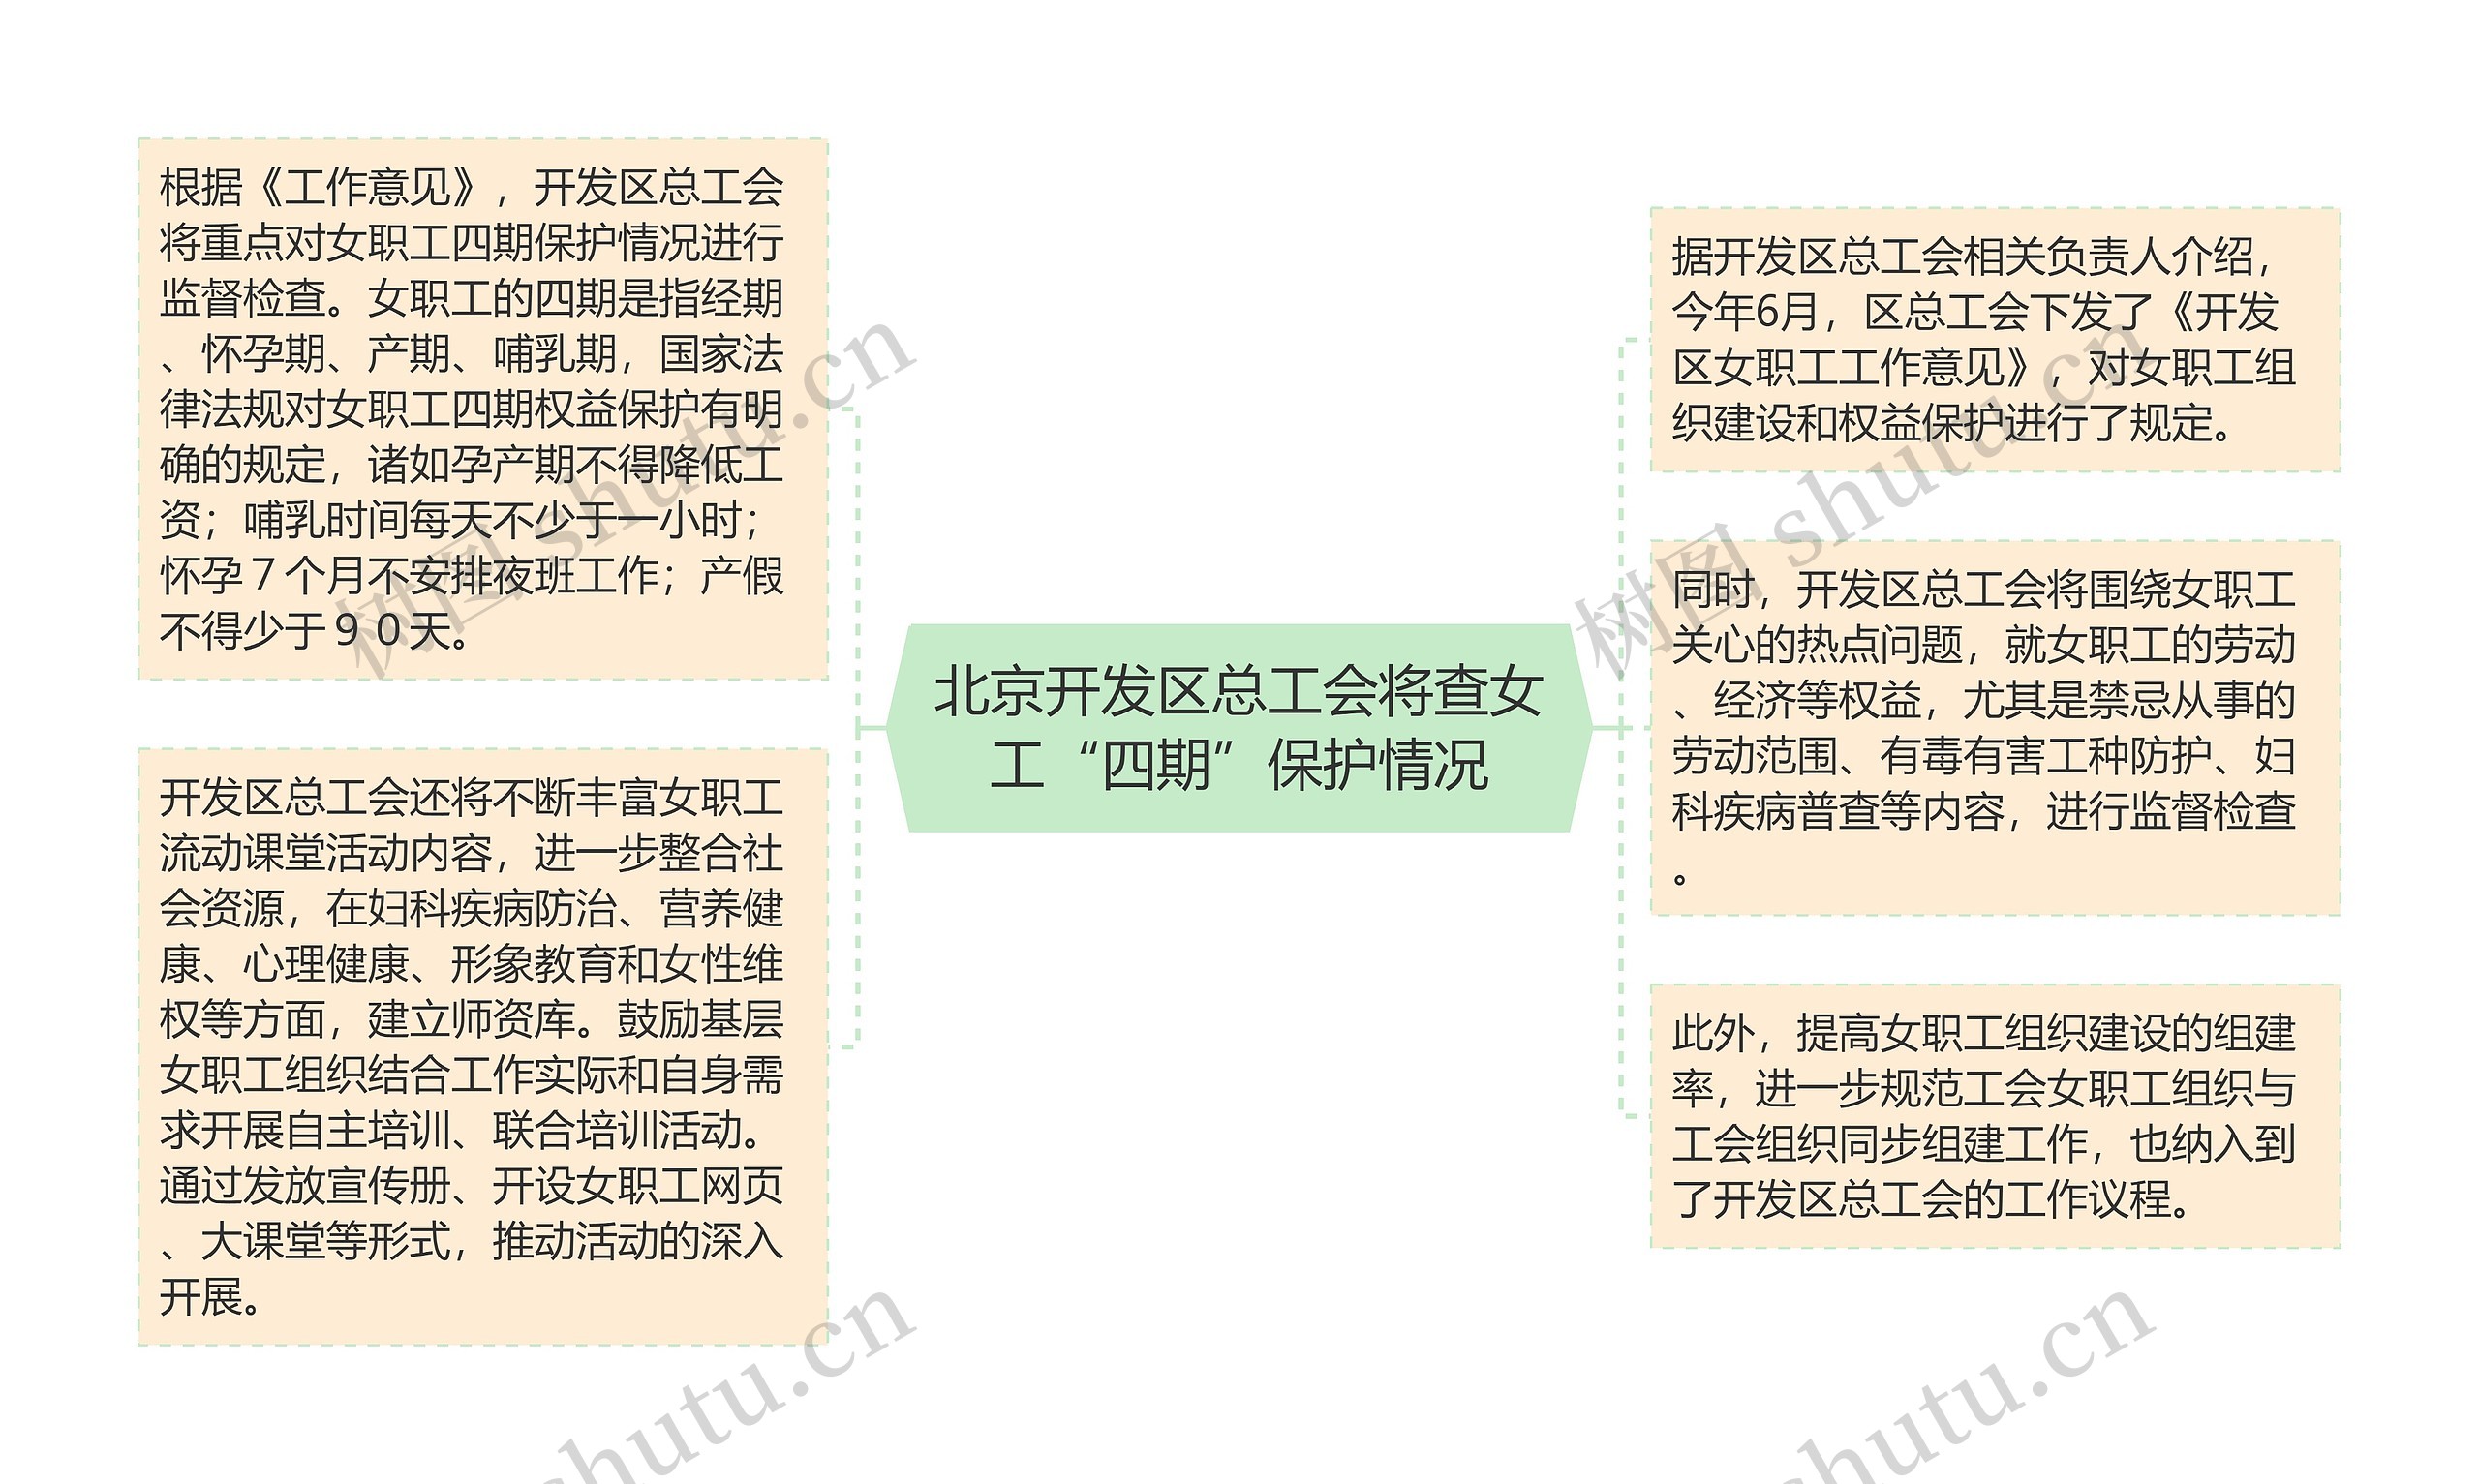 北京开发区总工会将查女工“四期”保护情况